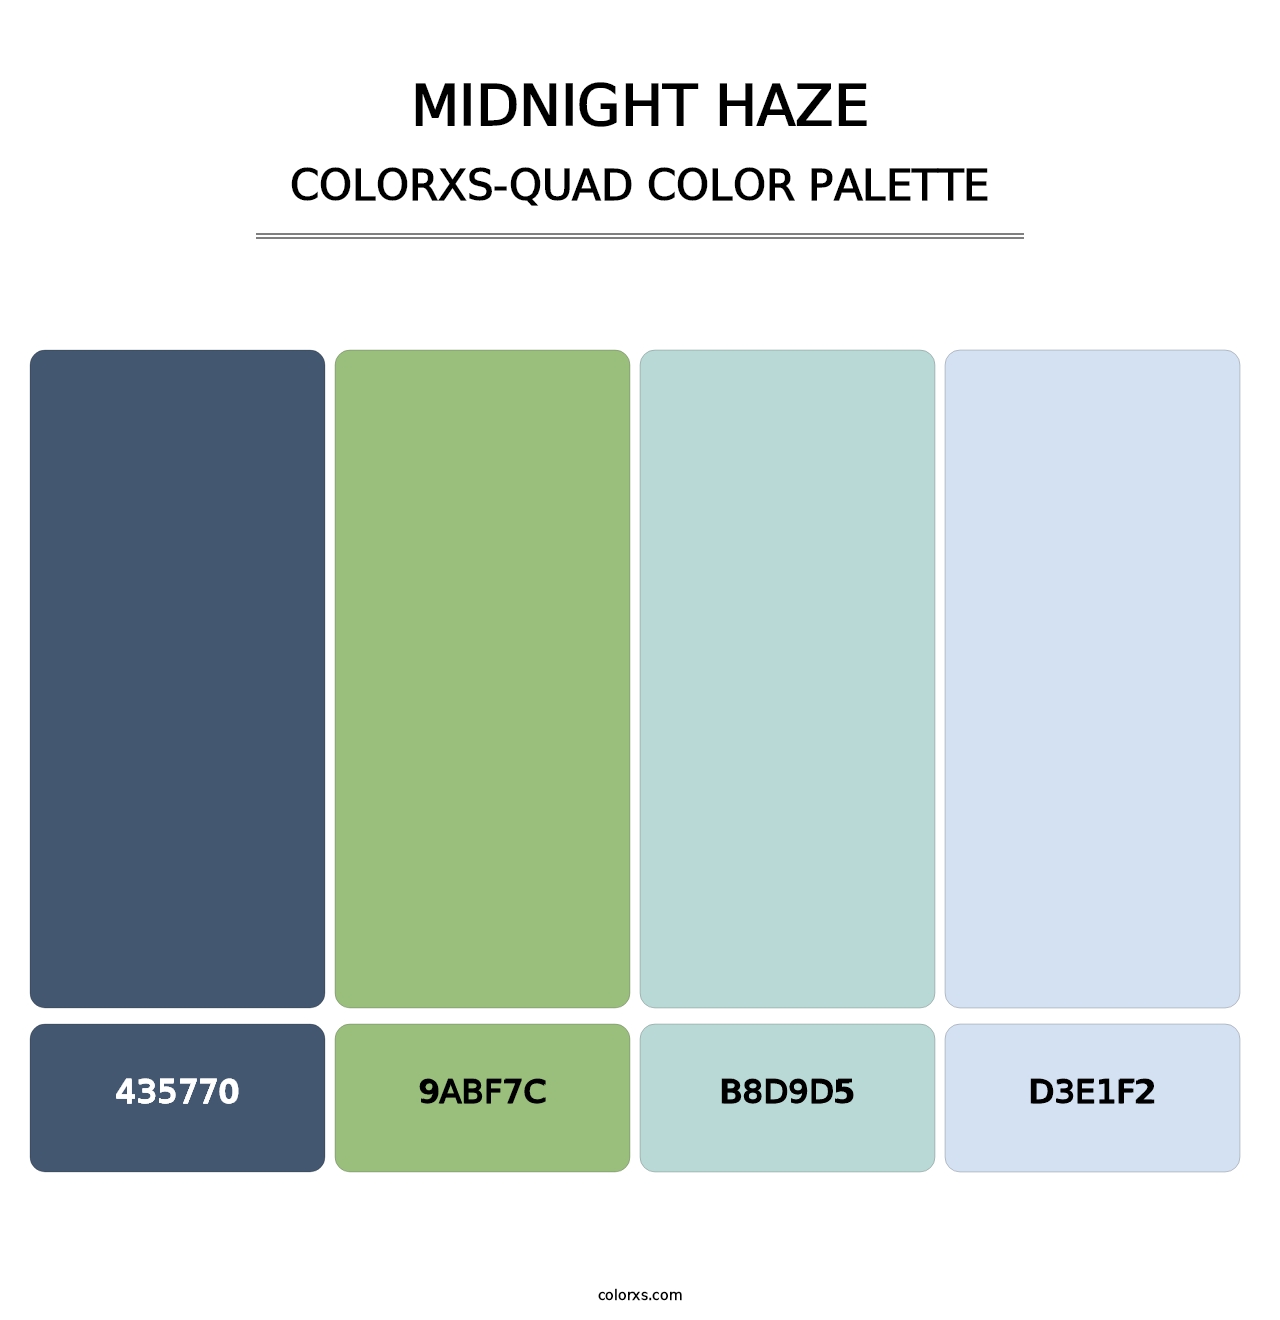 Midnight Haze - Colorxs Quad Palette